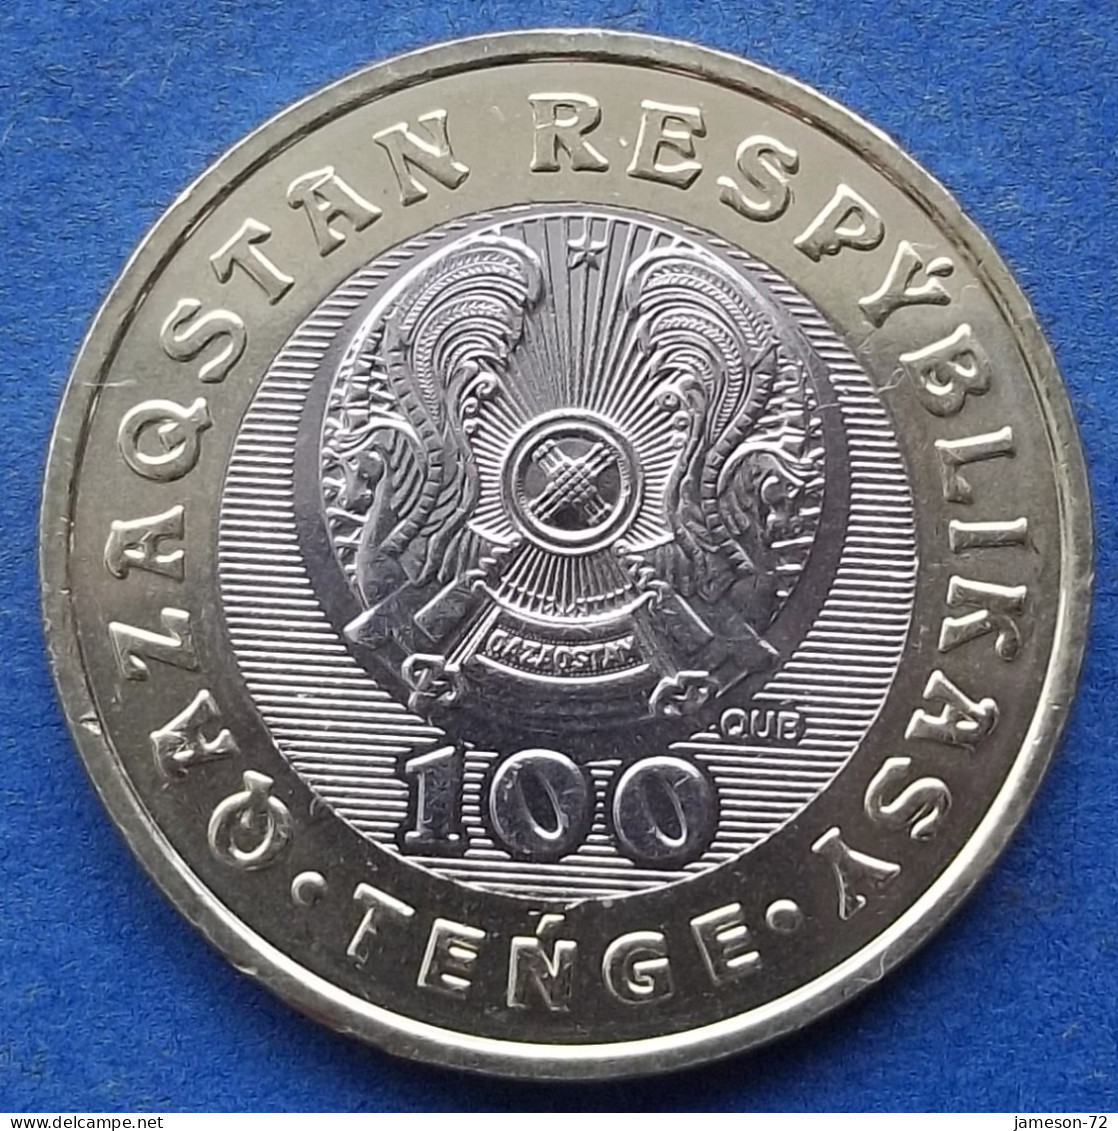 KAZAKHSTAN - 100 Tenge 2020 "Beren Myltyq" KM# 486 Independent Republic (1991) - Edelweiss Coins - Kazachstan